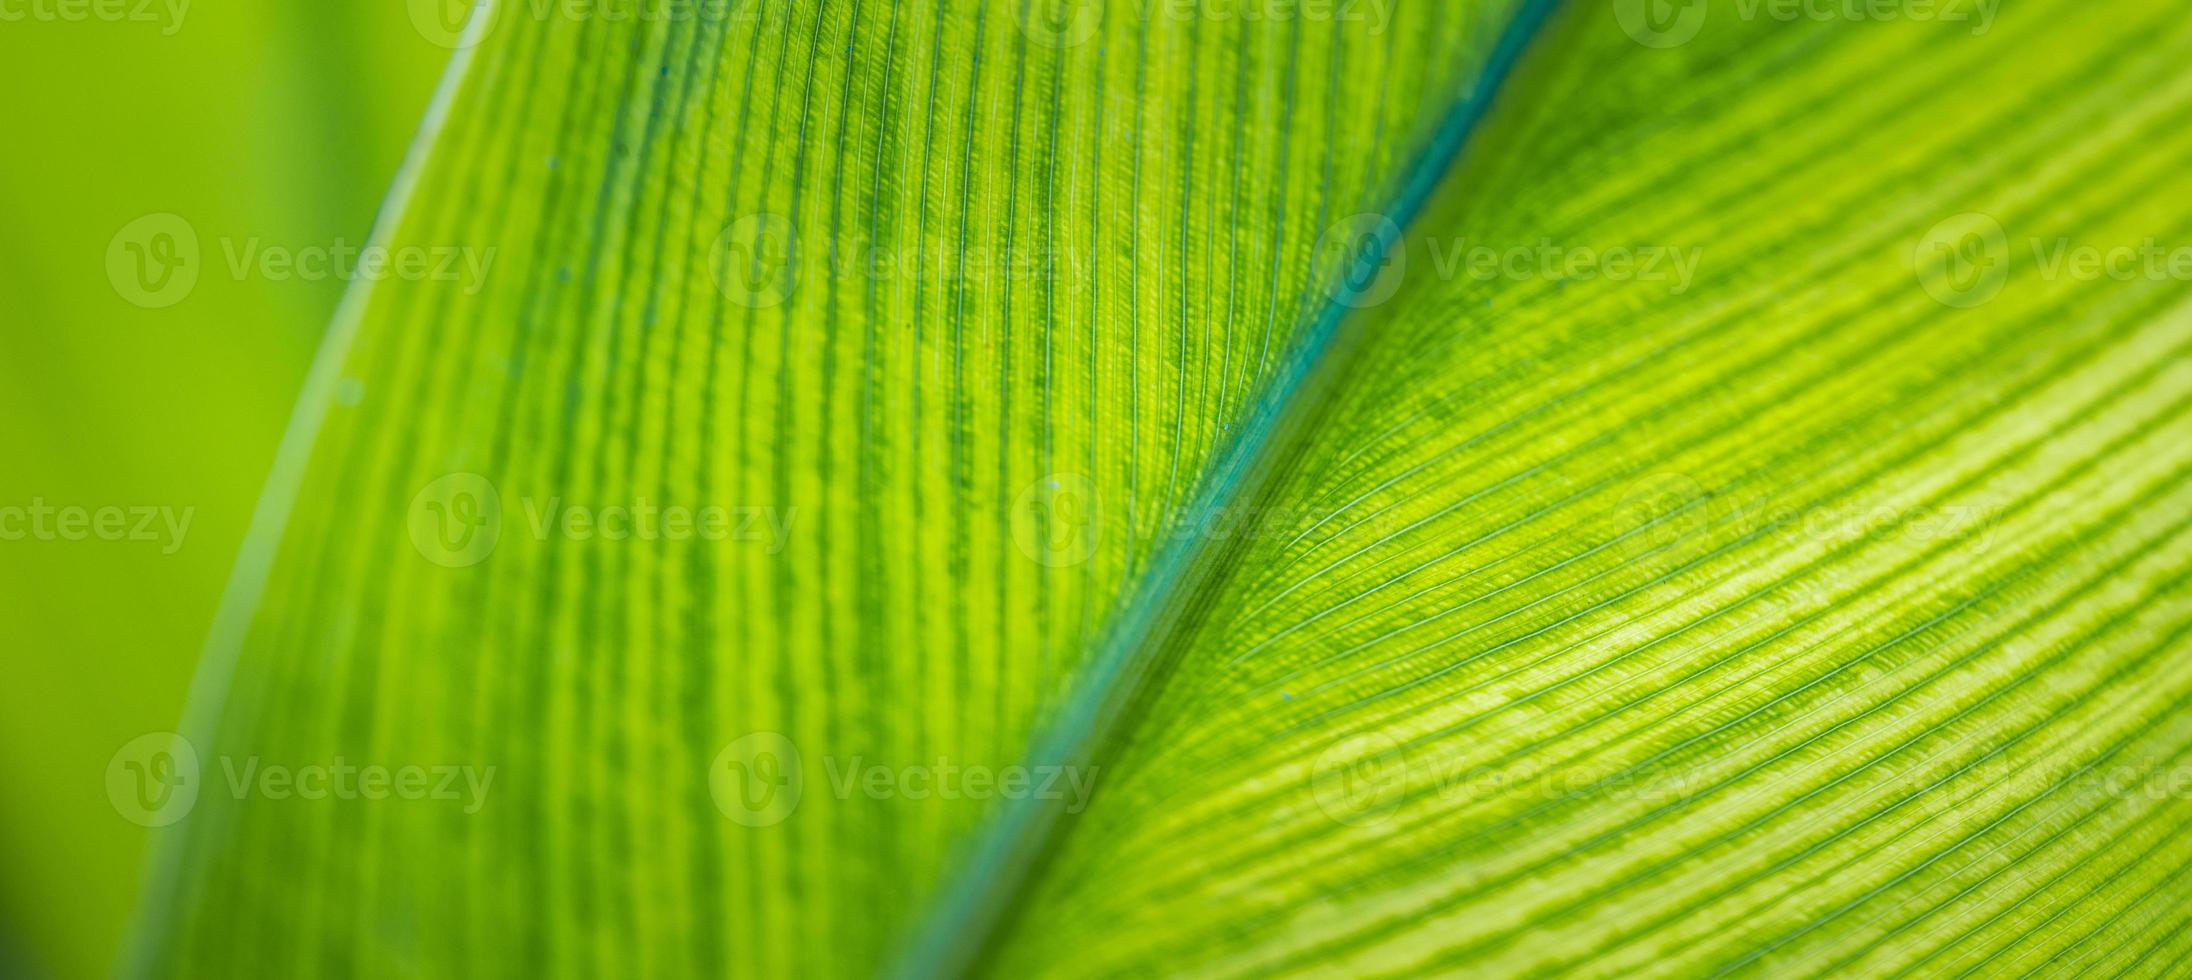 verbazingwekkend groen blad macro. helder zonnig detailopname, artistiek panoramisch Bijsnijden. detail van de verlicht structuur en patroon van palm blad plant, de aderen natuurlijk structuur naar een groen boom. ecologie concept foto